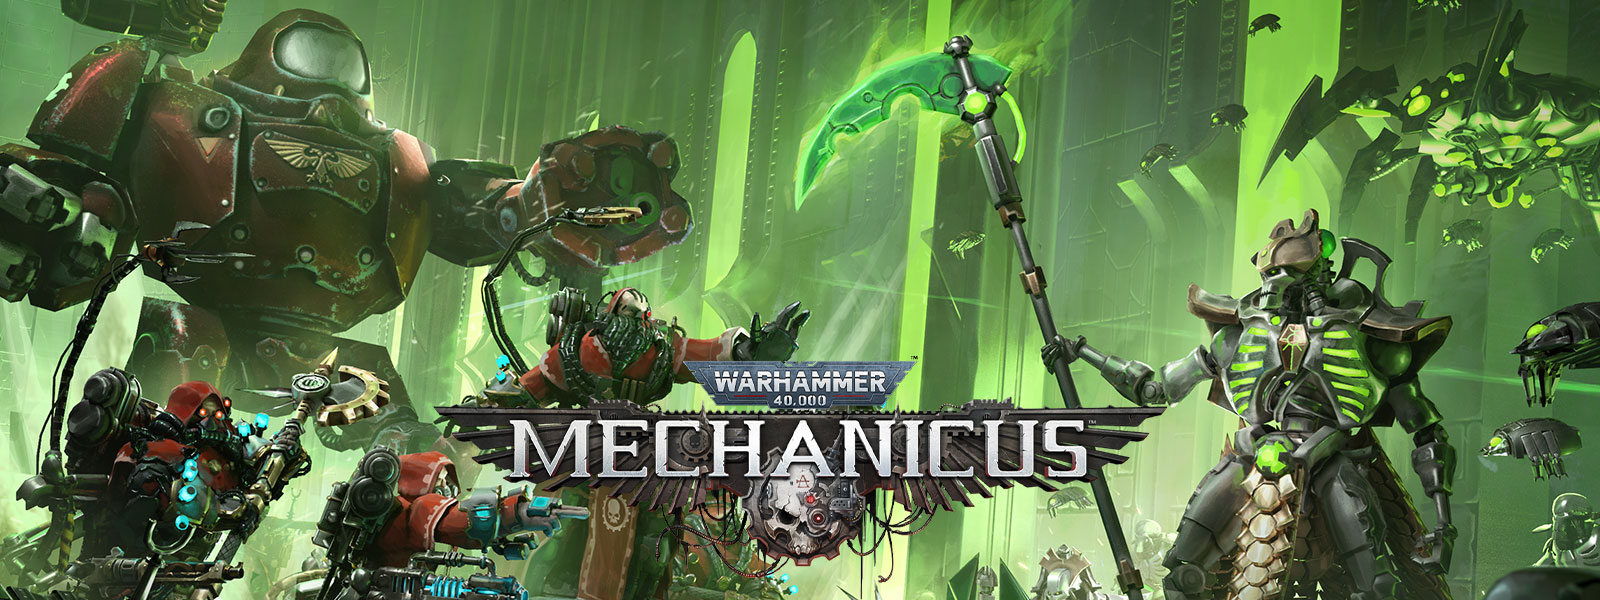 Warhammer 40,000: Mechanicus, High-tech armády se připravují k bitvě.